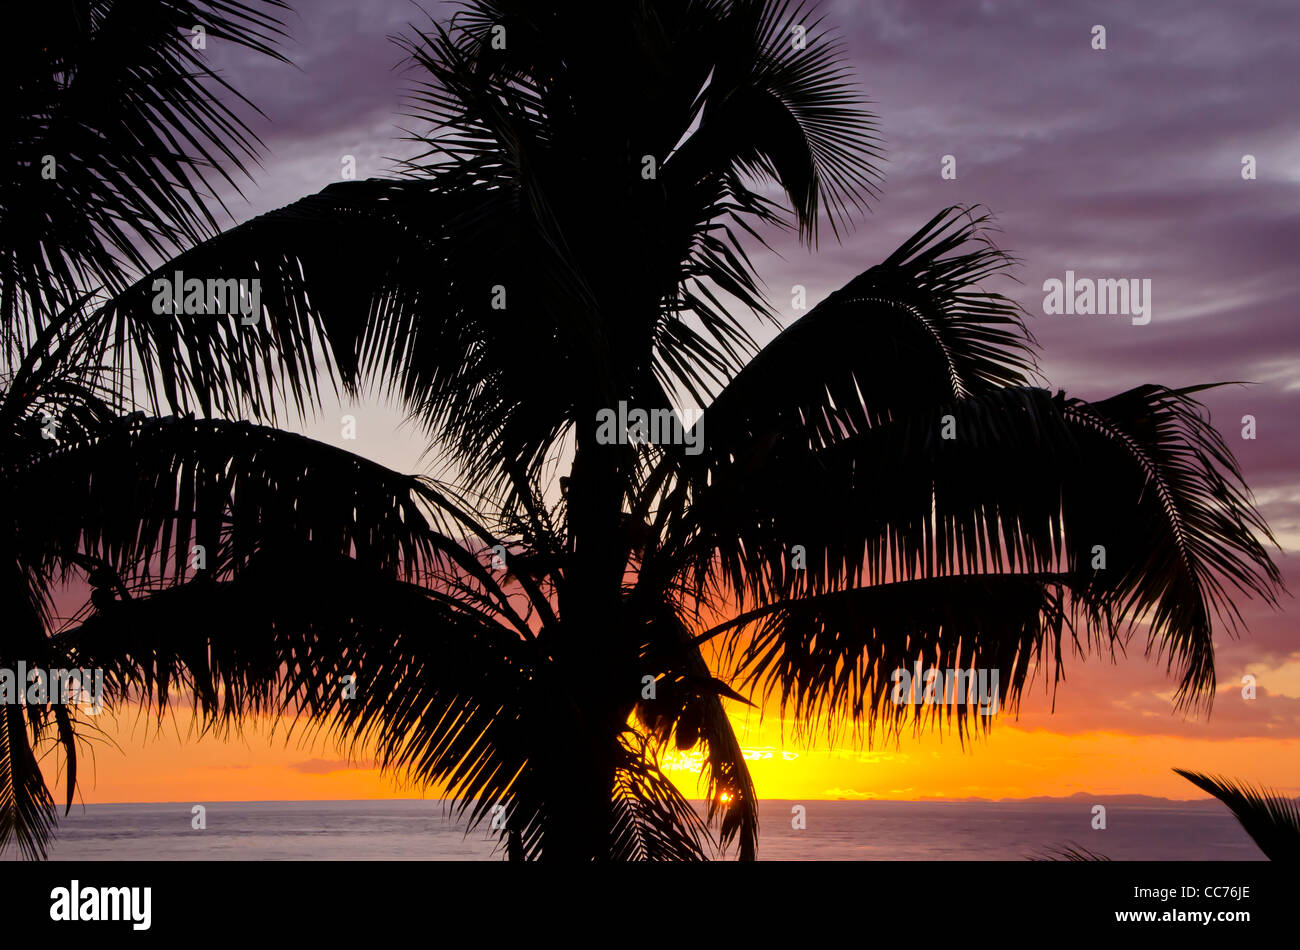 Silhouette fronde di palme ritratto pt al tramonto, iconico immagine tropicale Foto Stock